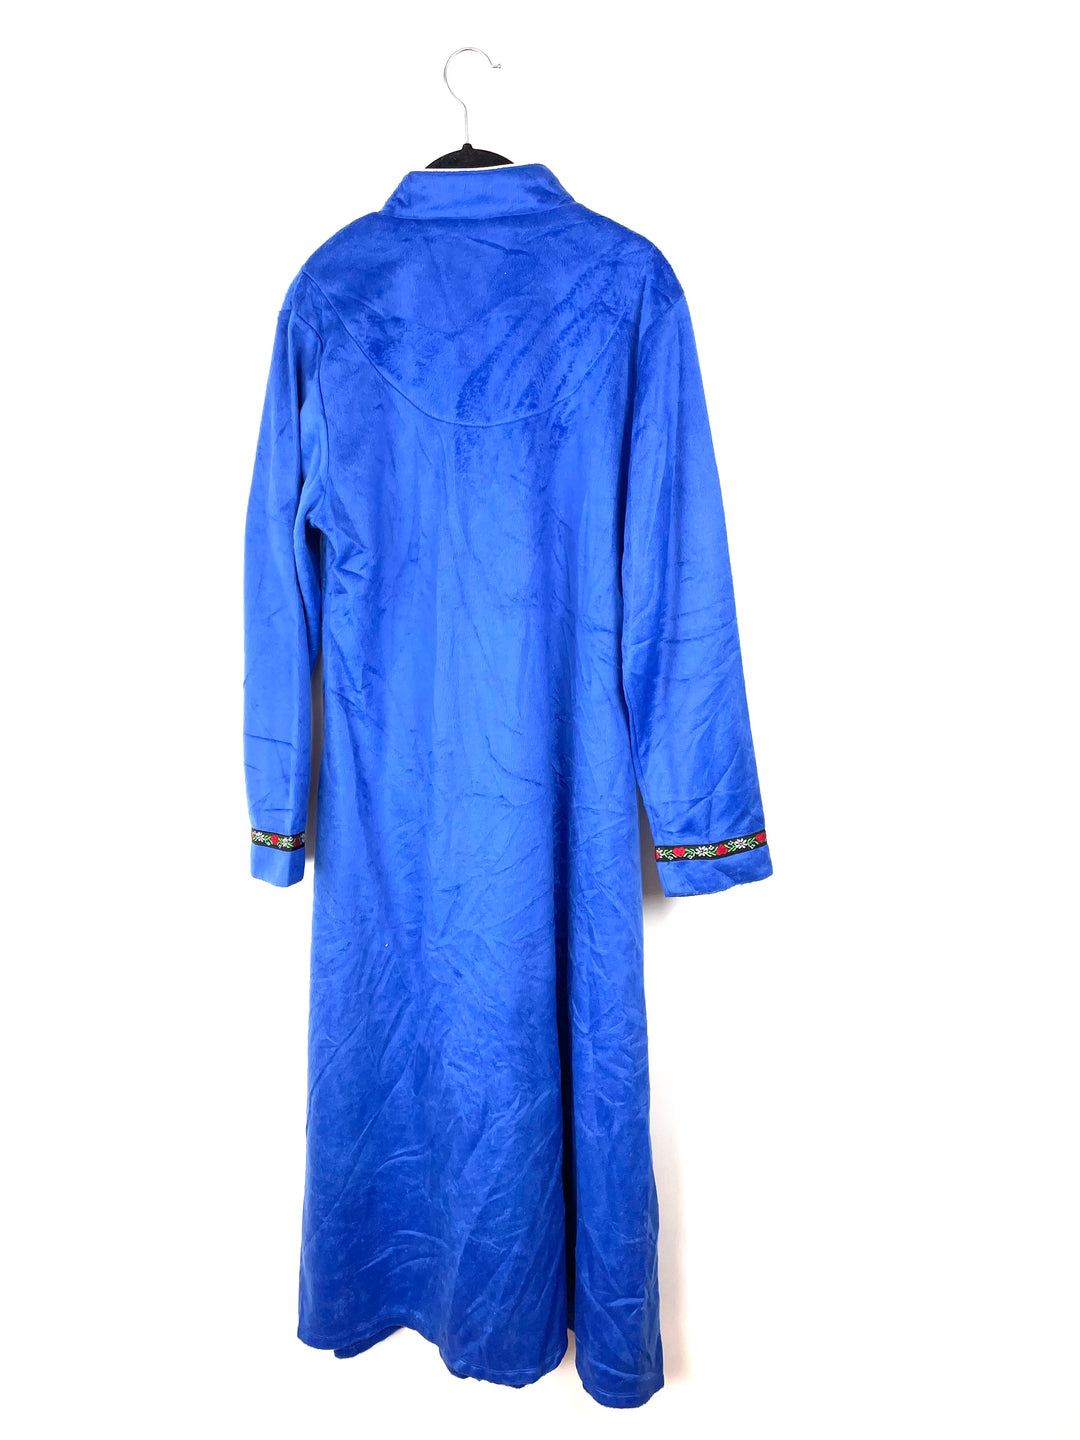 Long Royal Blue Robe - Small